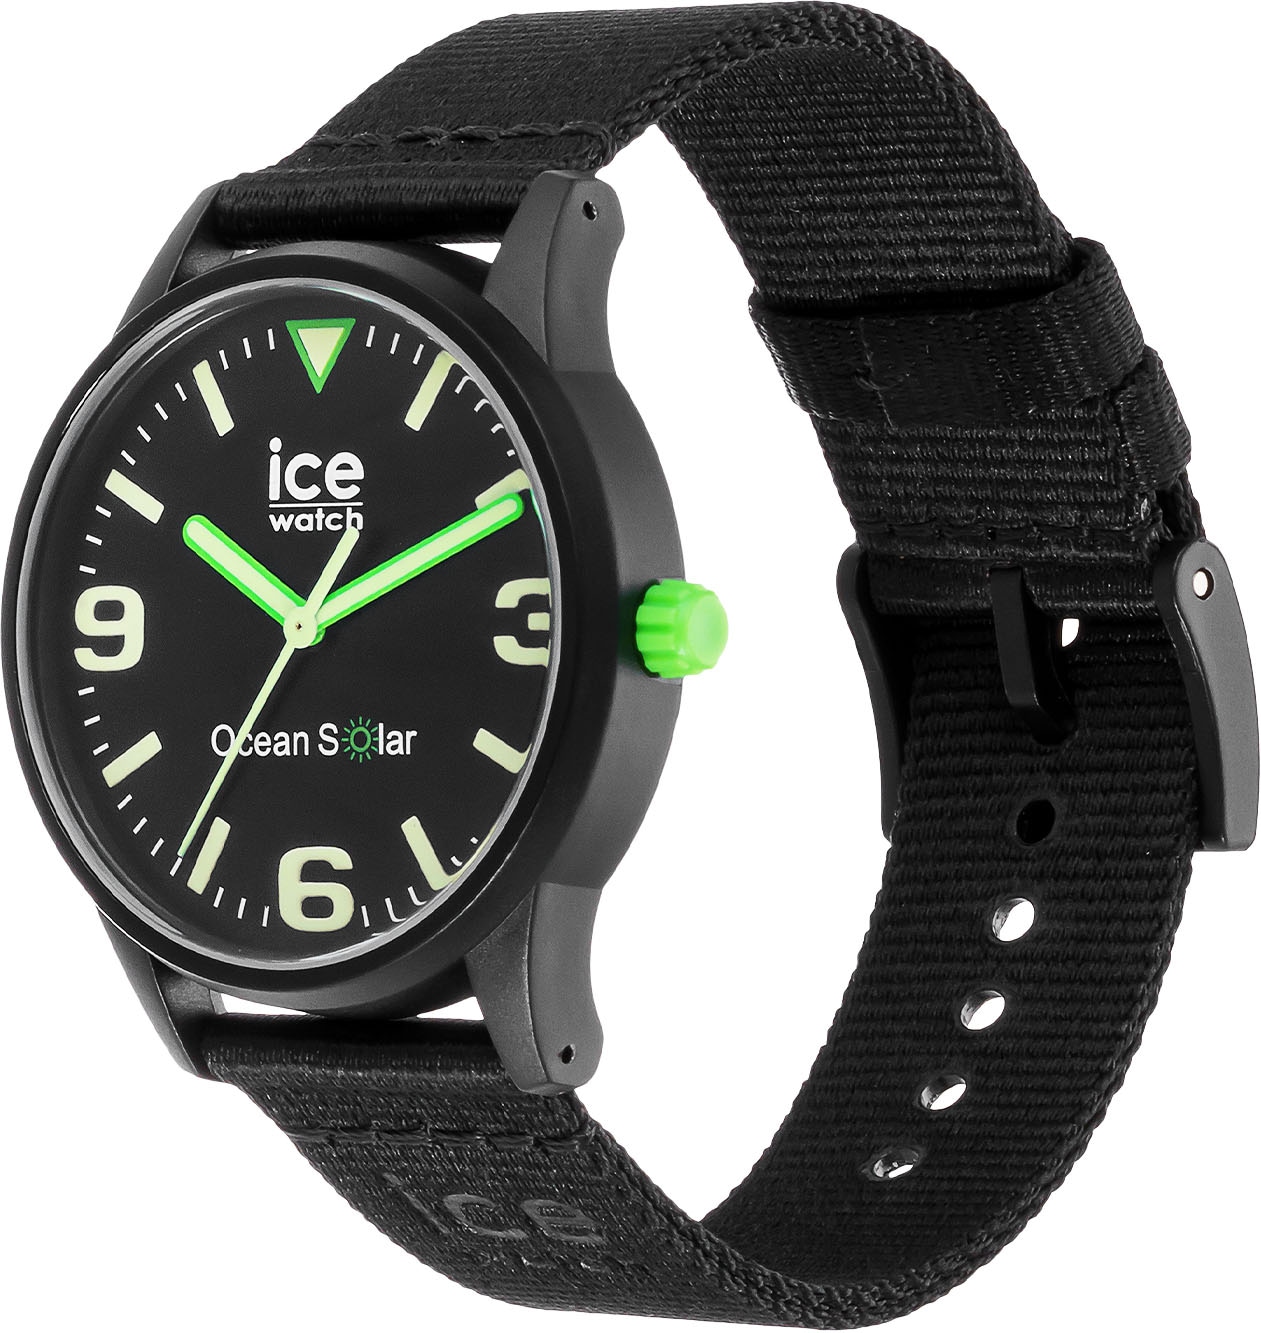 »ICE ice-watch | ocean Solaruhr - 019647« BAUR bestellen SOLAR,